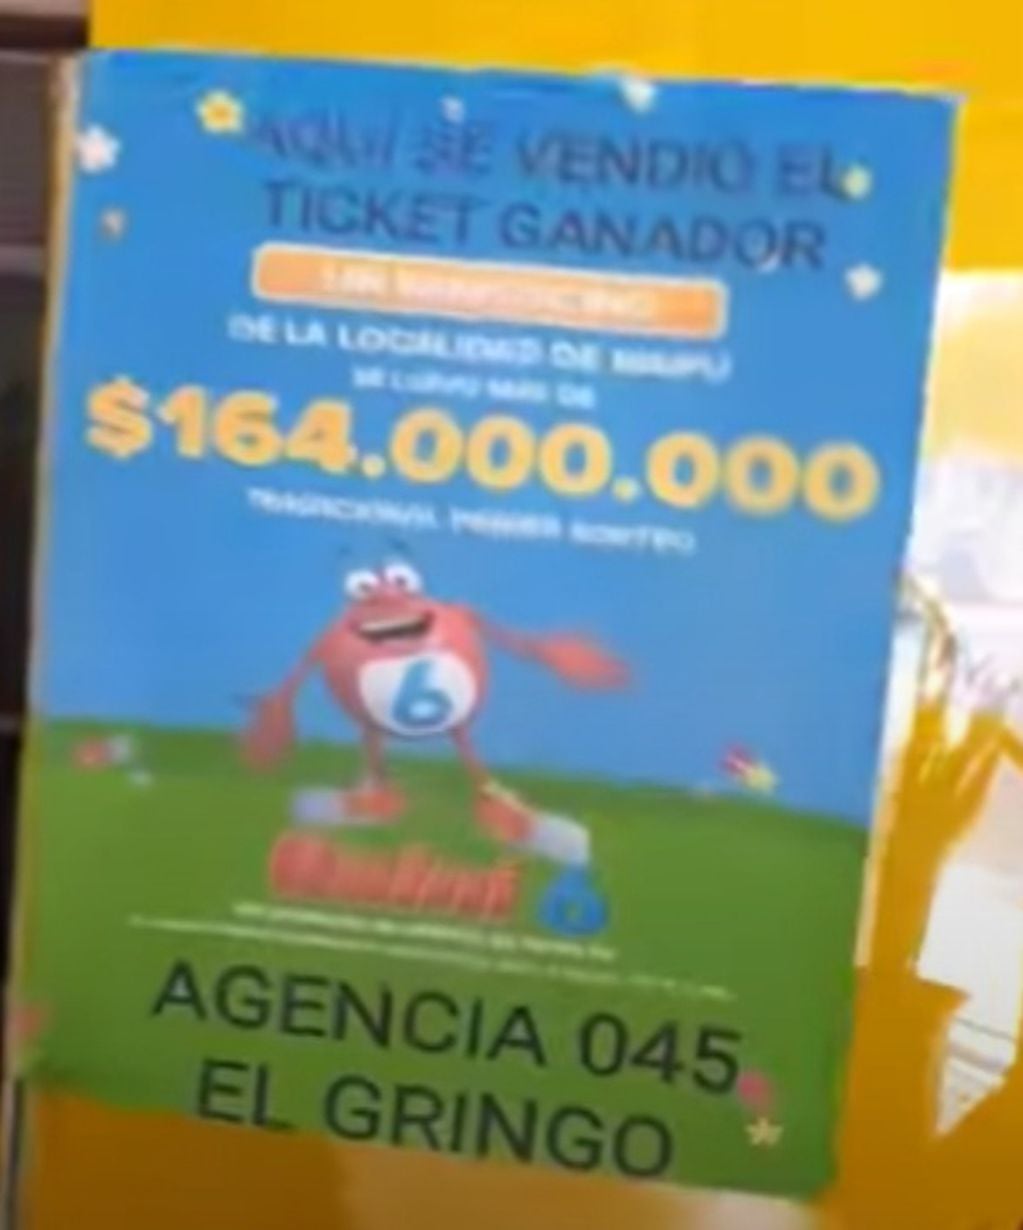 La agencia El Gringo que se encuentra frente a la plaza de Maipú vendió el ticket ganador del sorteo del 28 de septiembre.